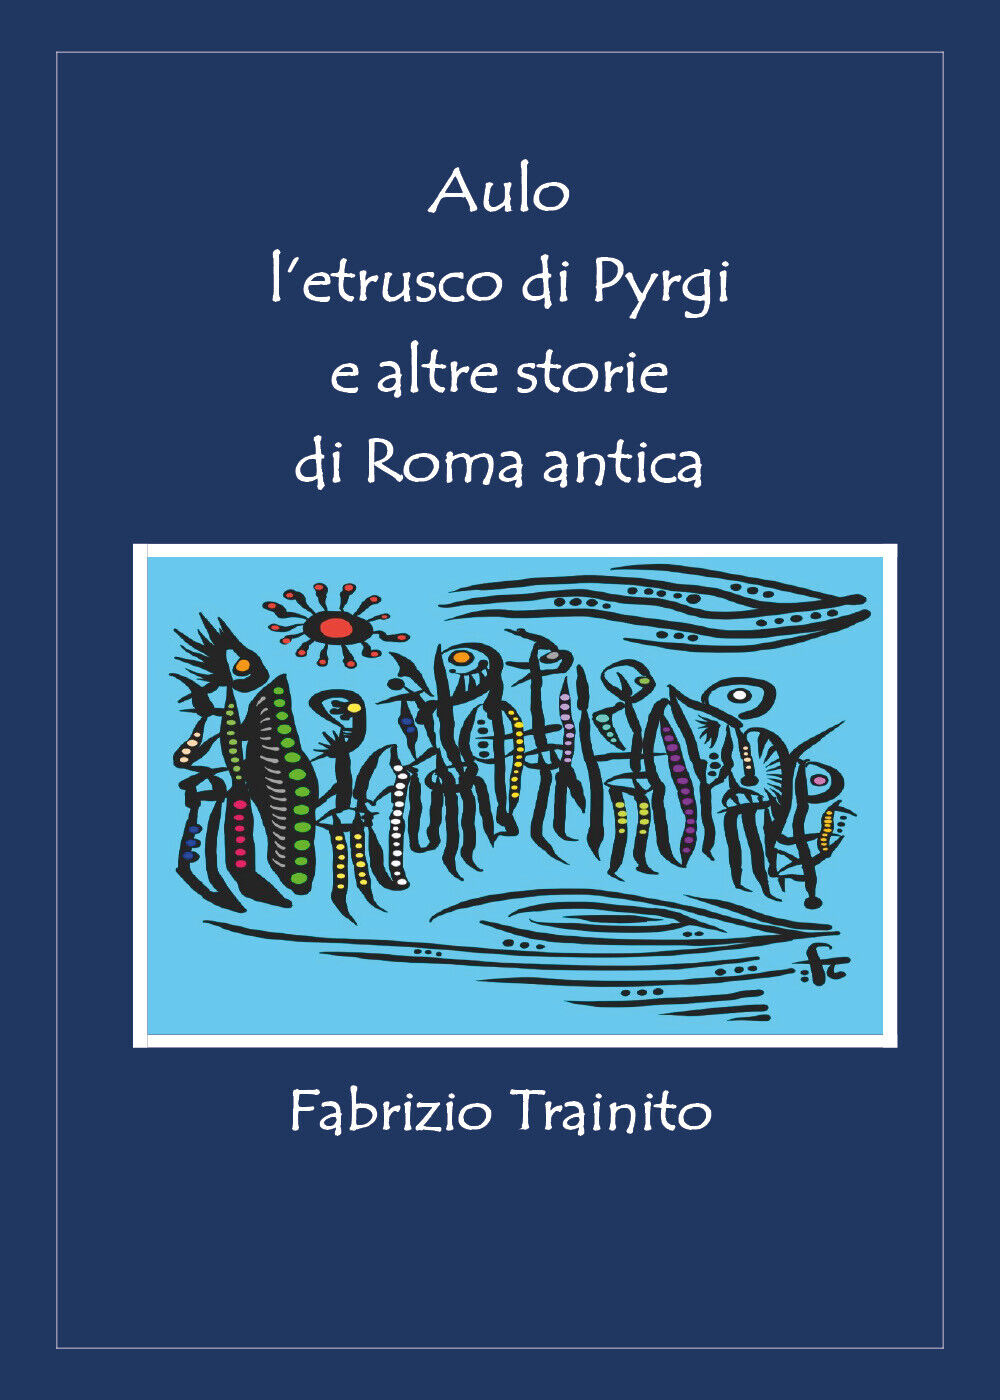 Aulo L'etrusco di Pyrgi e altre storie di Roma antica di Fabrizio Trainito,  202